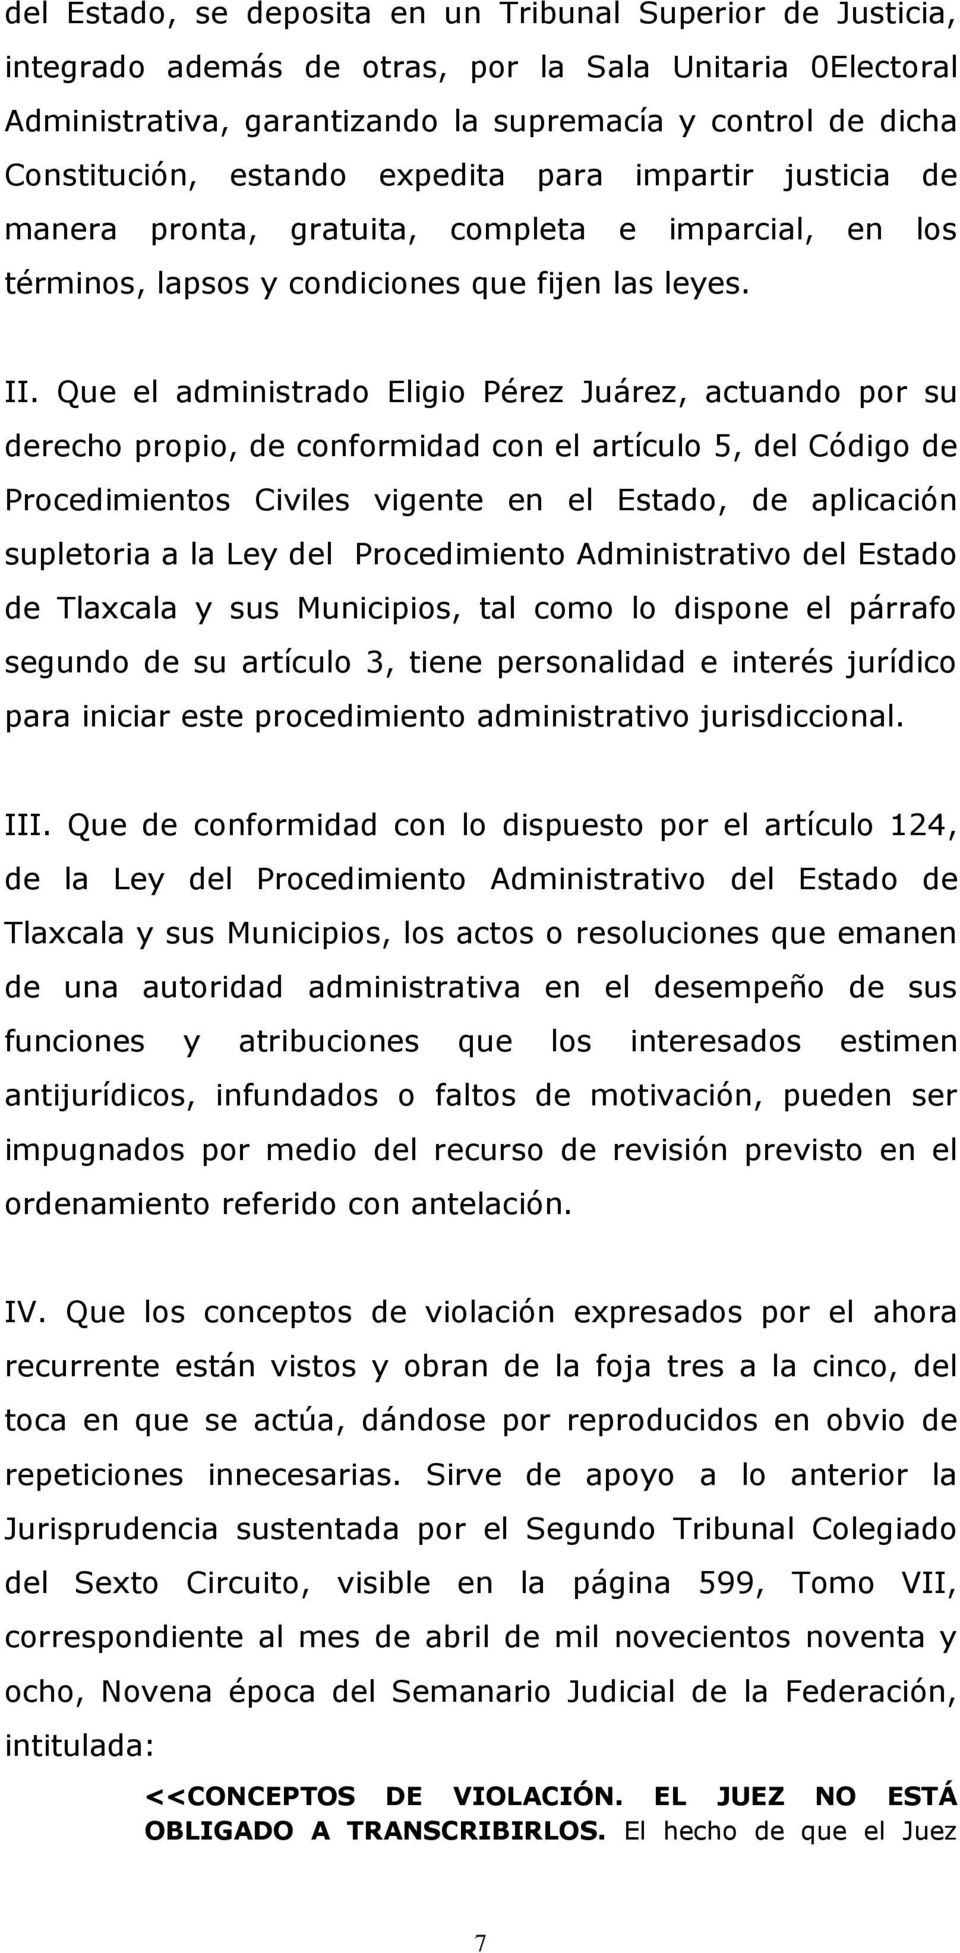 Que el administrado Eligio Pérez Juárez, actuando por su derecho propio, de conformidad con el artículo 5, del Código de Procedimientos Civiles vigente en el Estado, de aplicación supletoria a la Ley